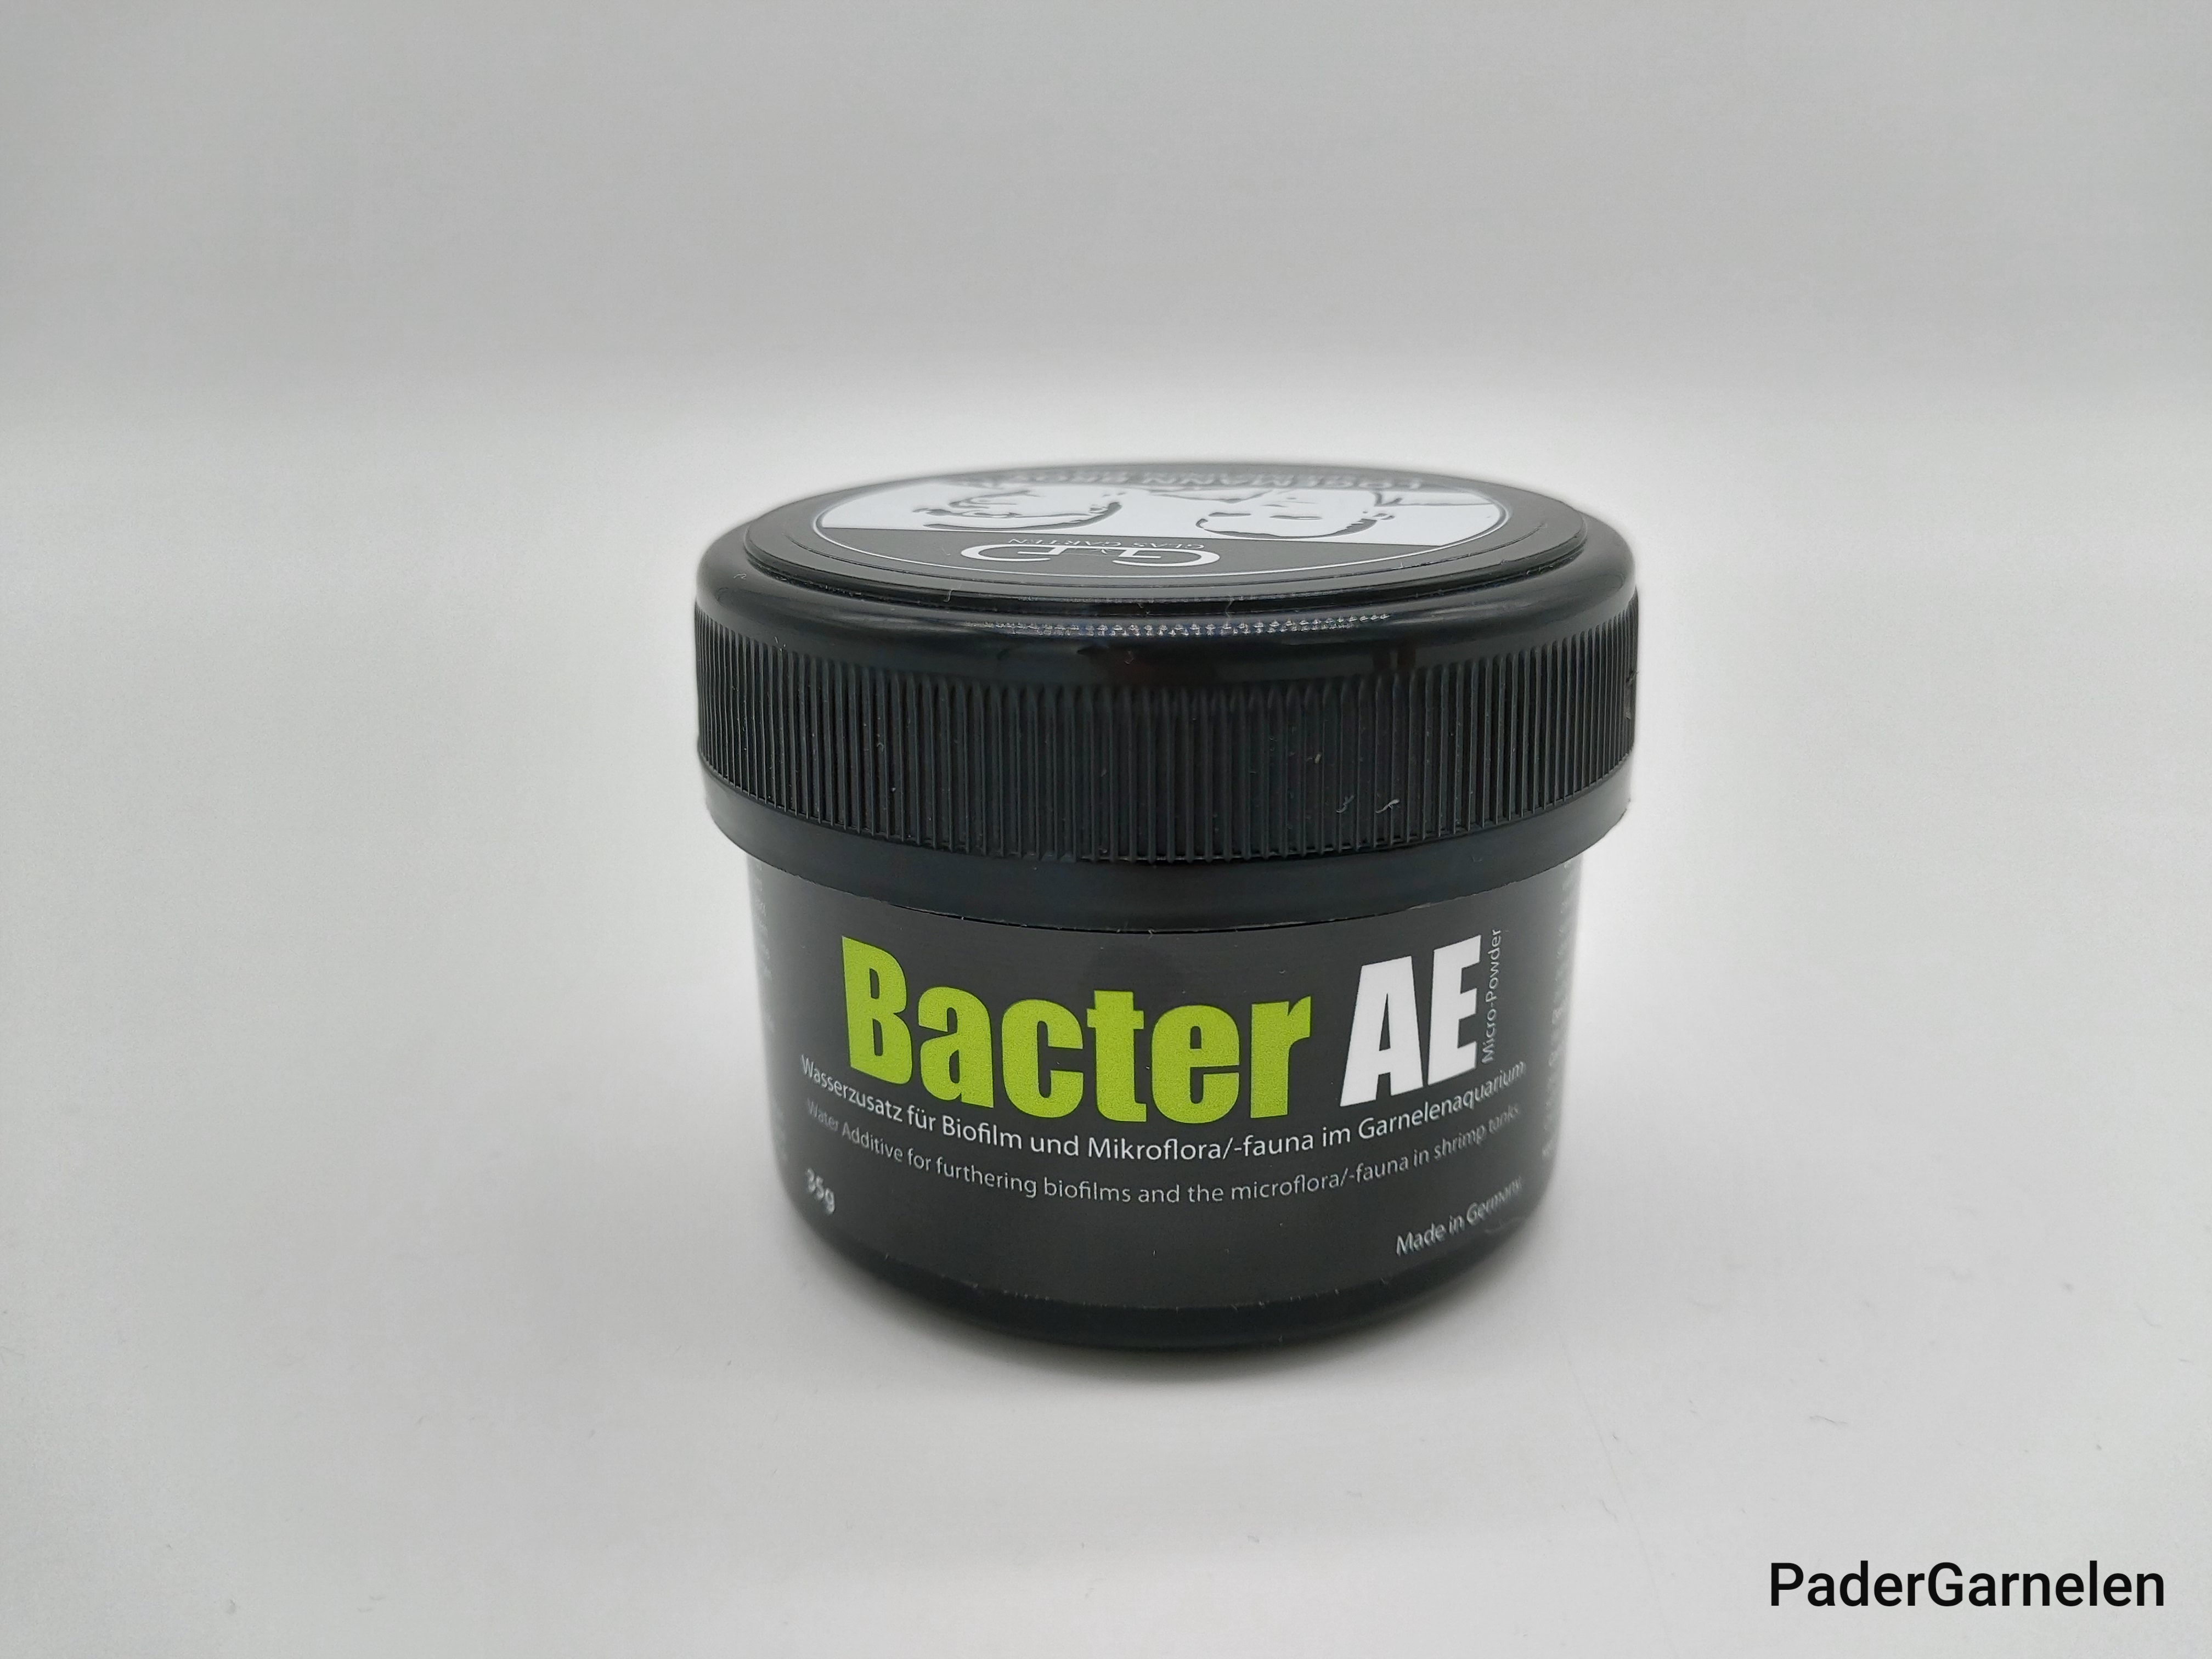 Bacter AE 35g – PaderGarnelen